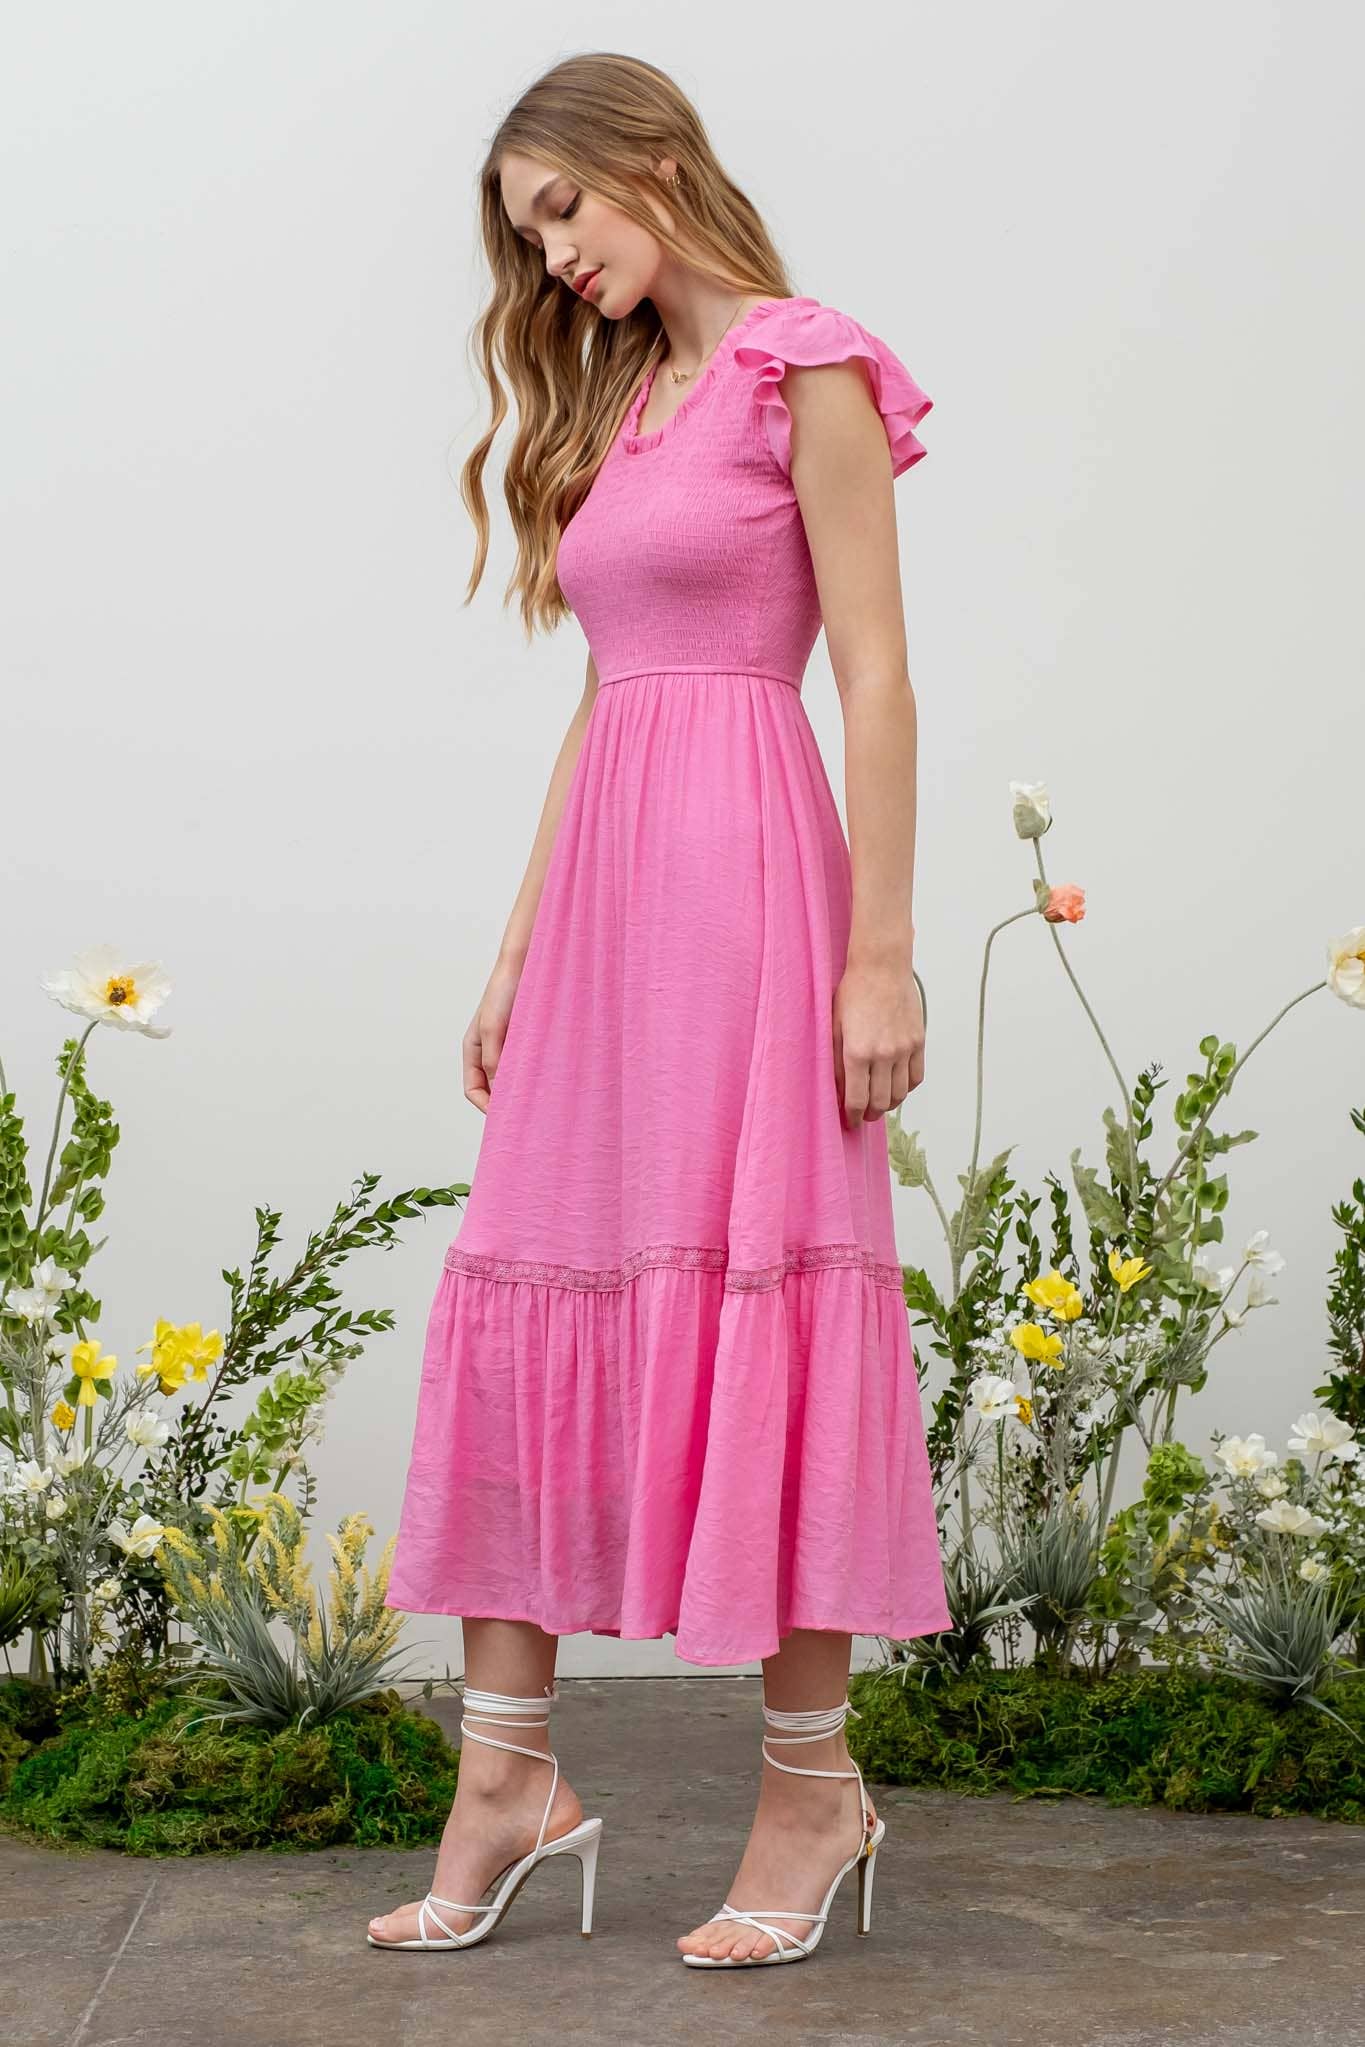 Taking Chances (Pink) Smocked Dress